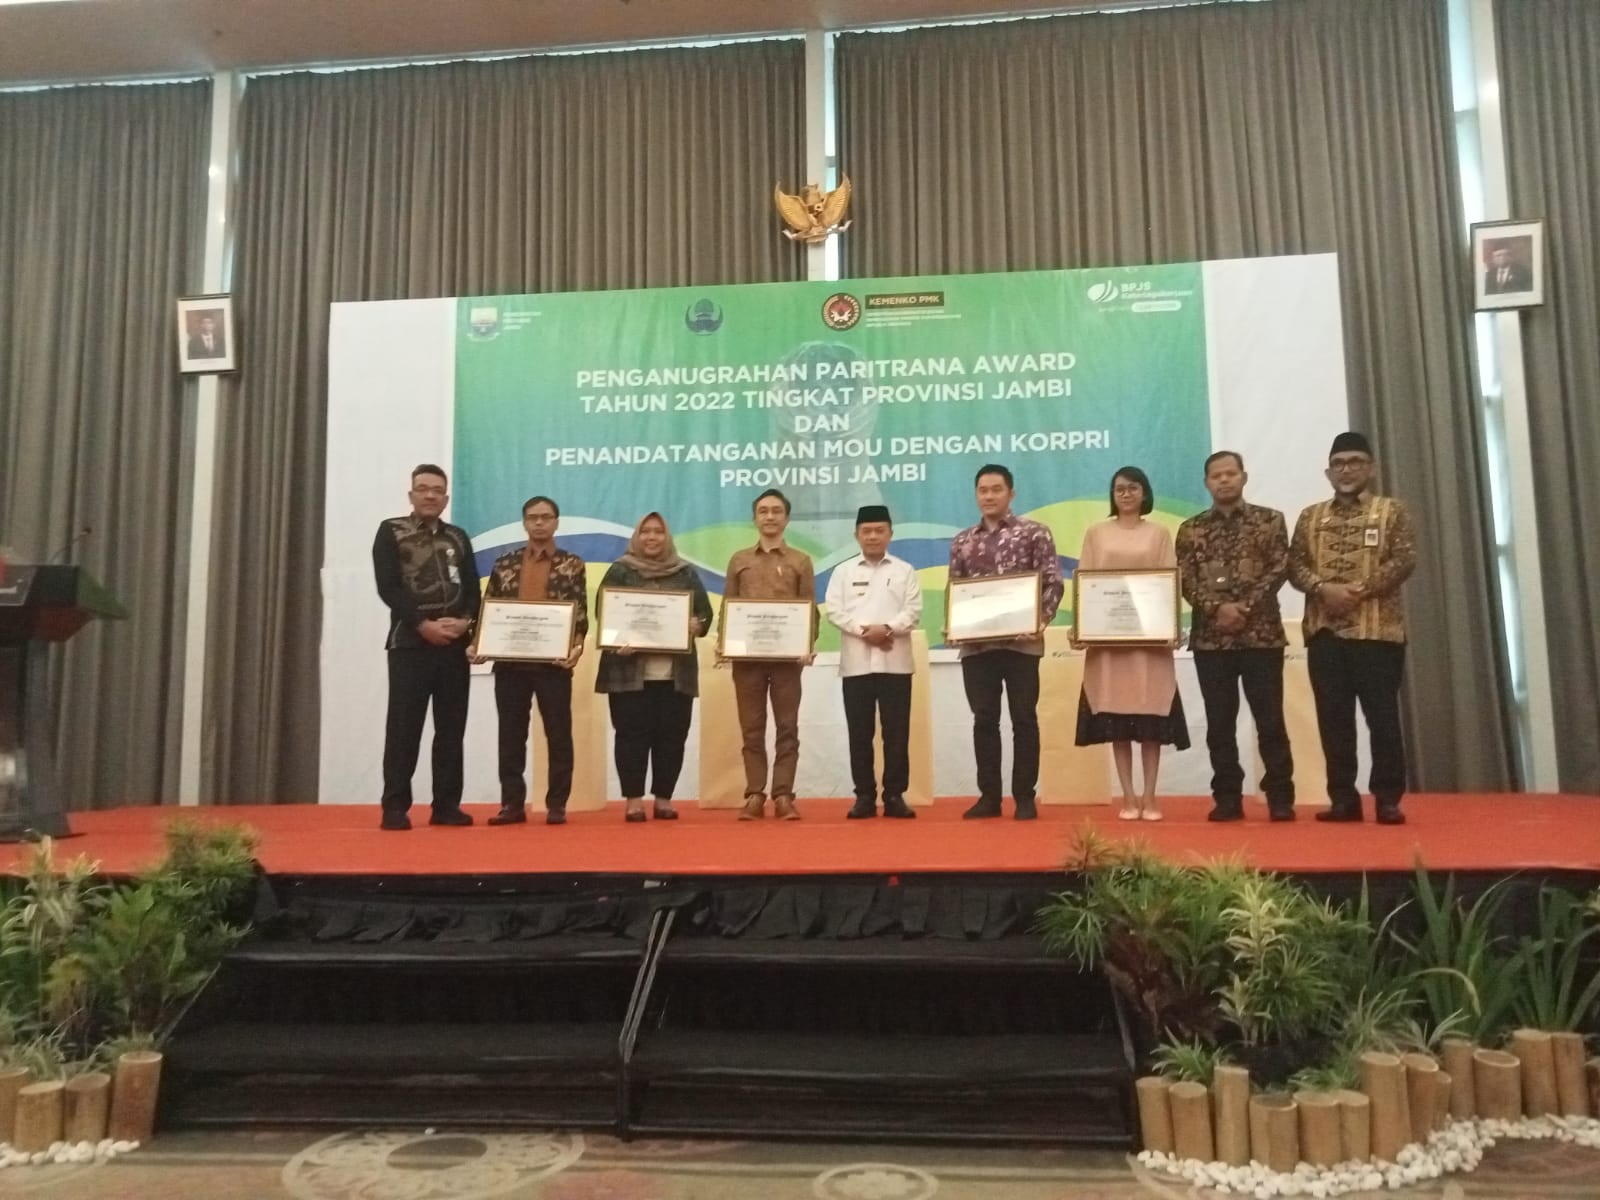 BPJS Ketenagakerjaan Gelar Paritrana Award Tingkat Provinsi Jambi 